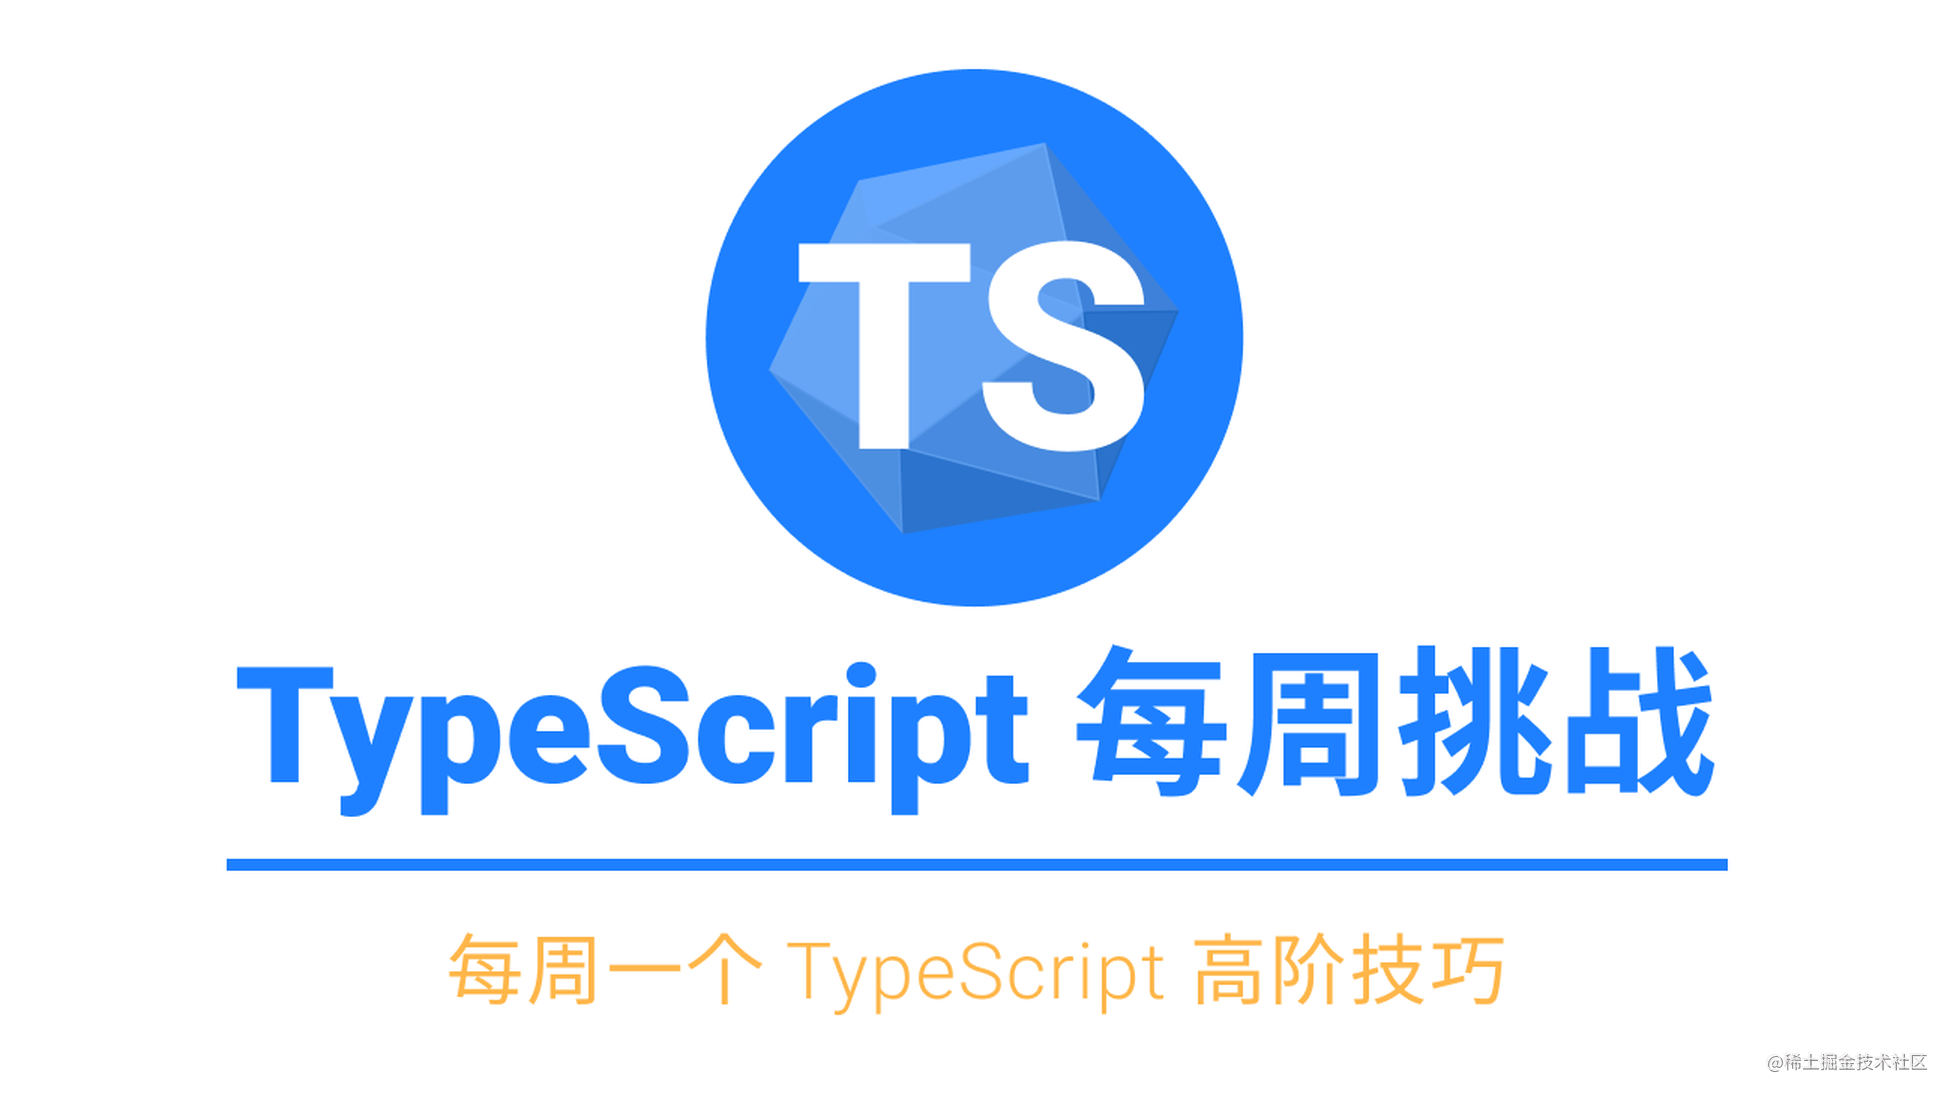 [答案公布] TypeScript 每周挑战第 2 期：条件类型重组